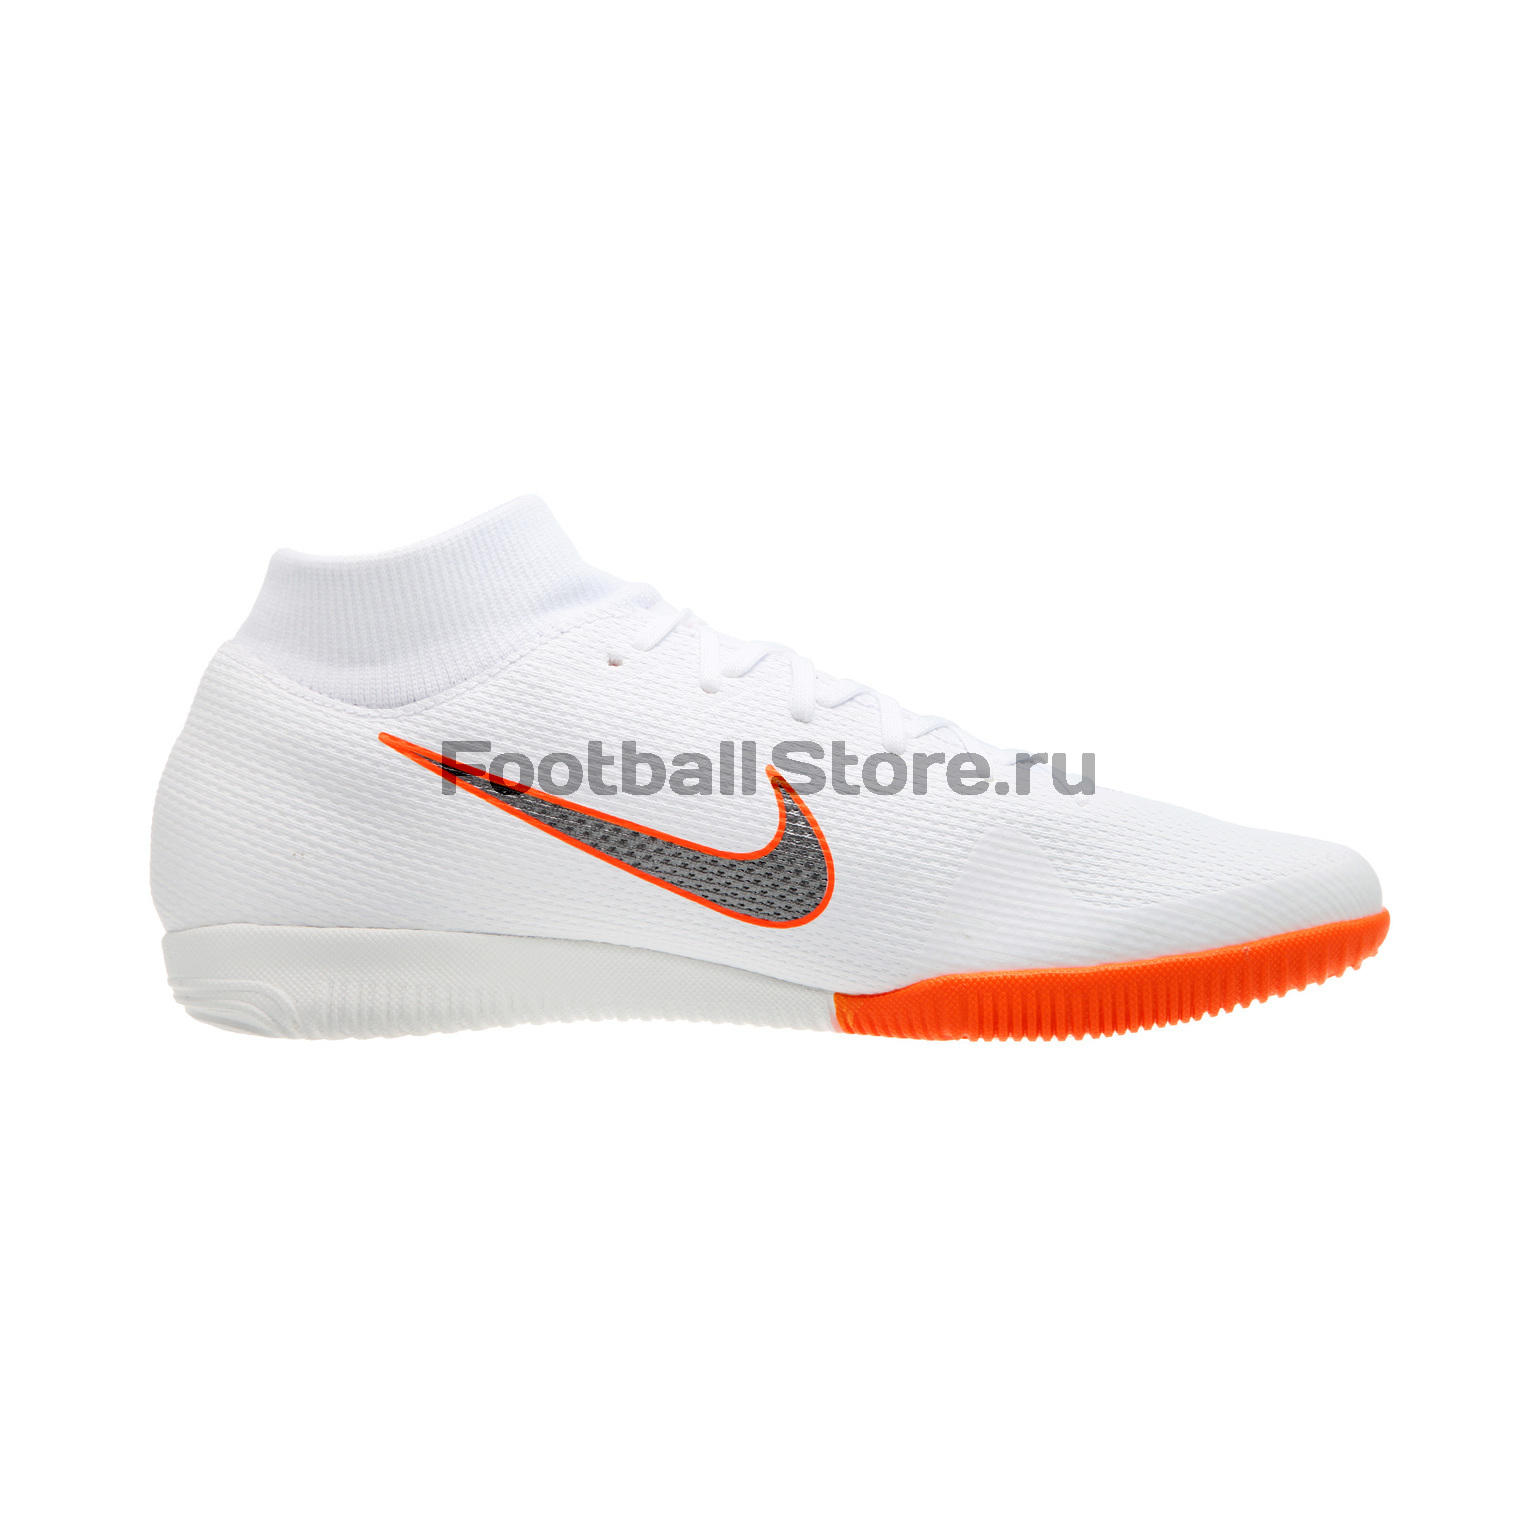 Обувь для зала Nike SuperflyX 6 Academy IC AH7369-107